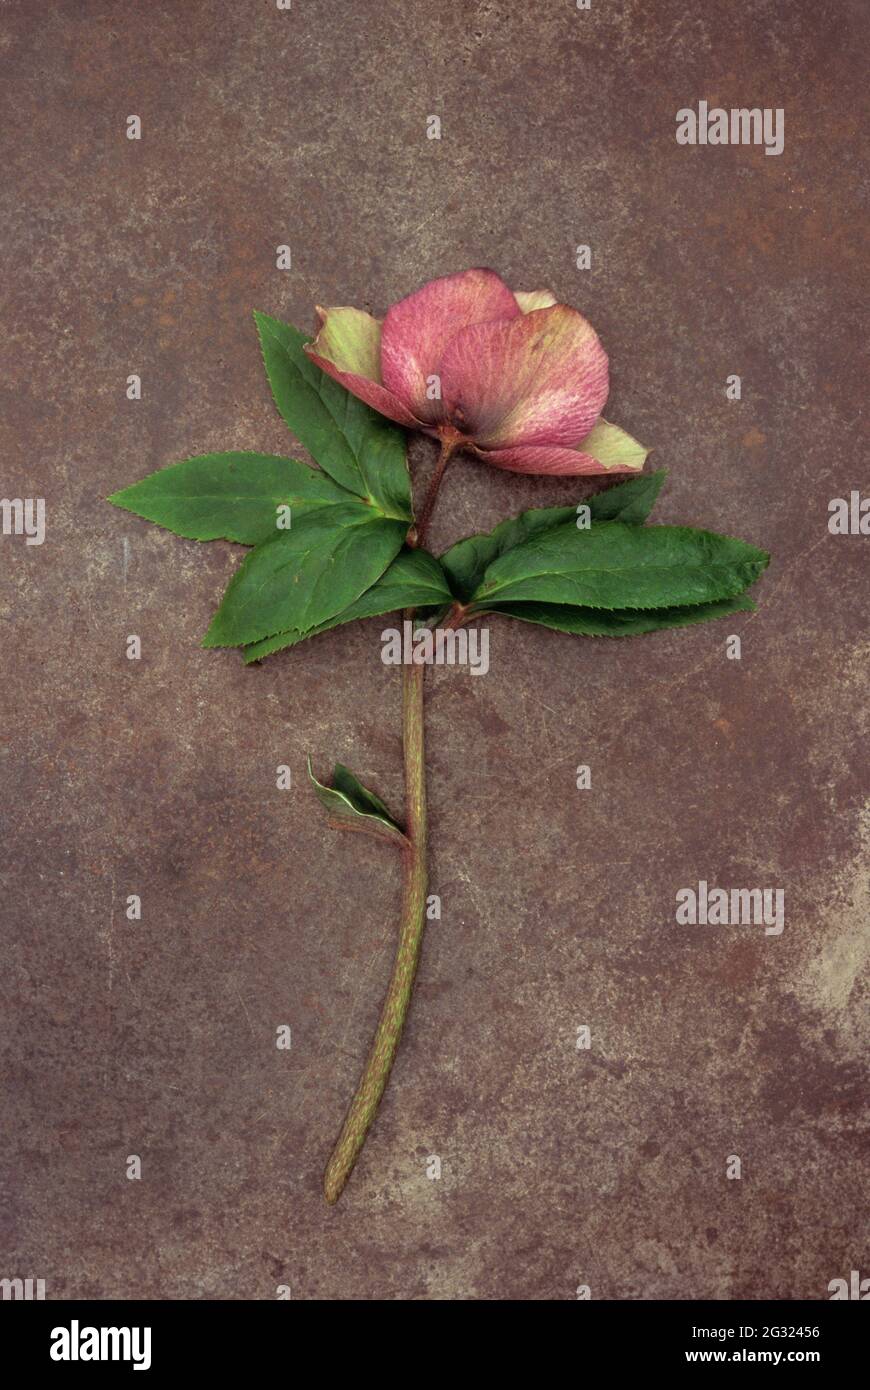 Tige unique et fleur en décoloration de la rose de Lenten ou de Helleborus orientalis, qui se trouvent sur du métal terni Banque D'Images